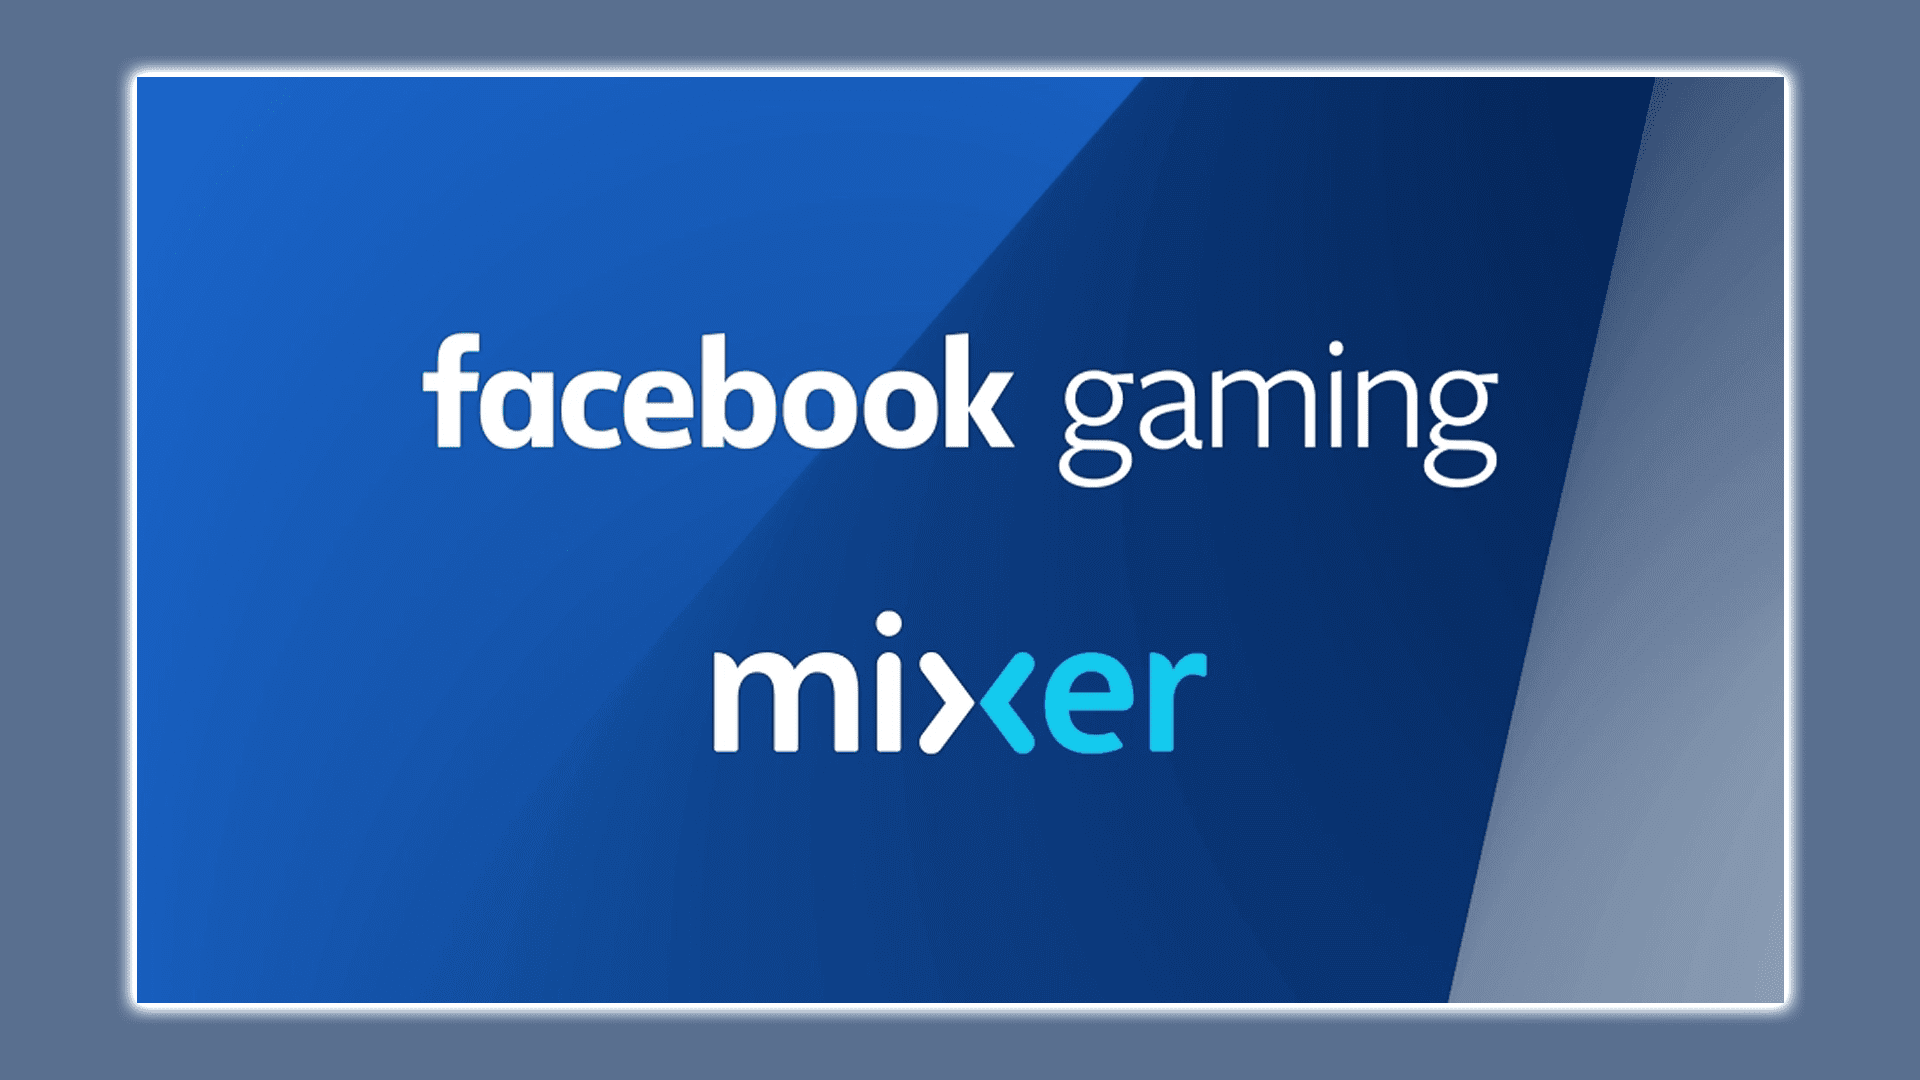 Microsoft avslutar Mixer, samarbetar med Facebook Gaming och släpper lös Ninja